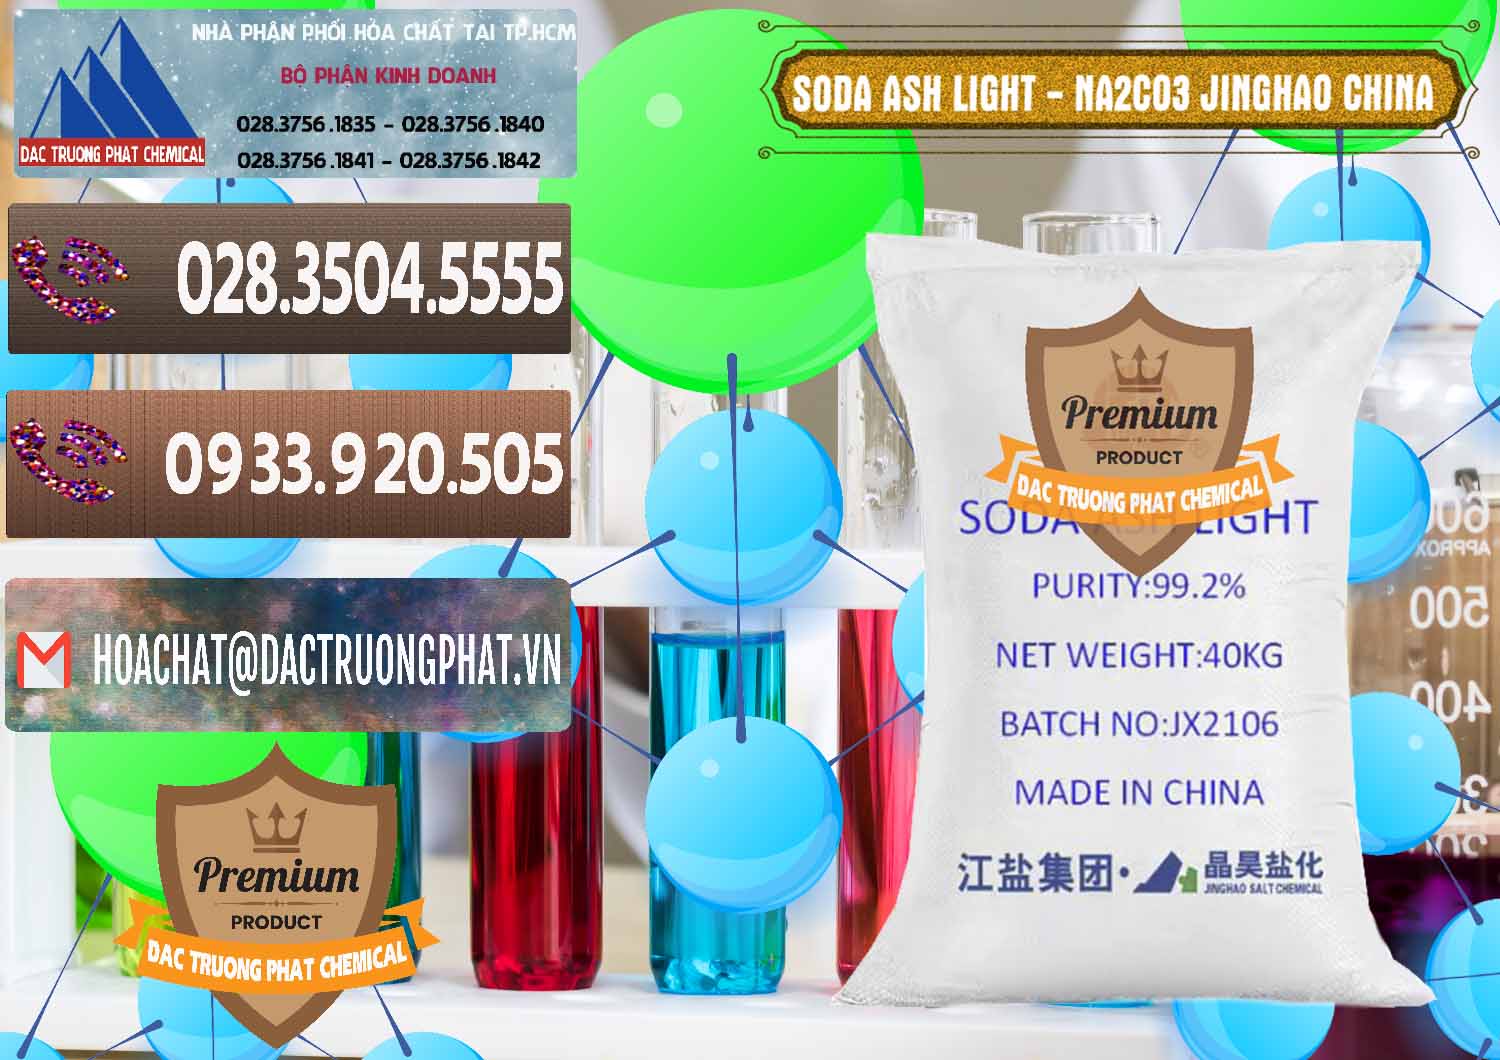 Đơn vị chuyên cung cấp ( bán ) Soda Ash Light - NA2CO3 Jinghao Trung Quốc China - 0339 - Cty chuyên phân phối _ cung ứng hóa chất tại TP.HCM - hoachatviet.net